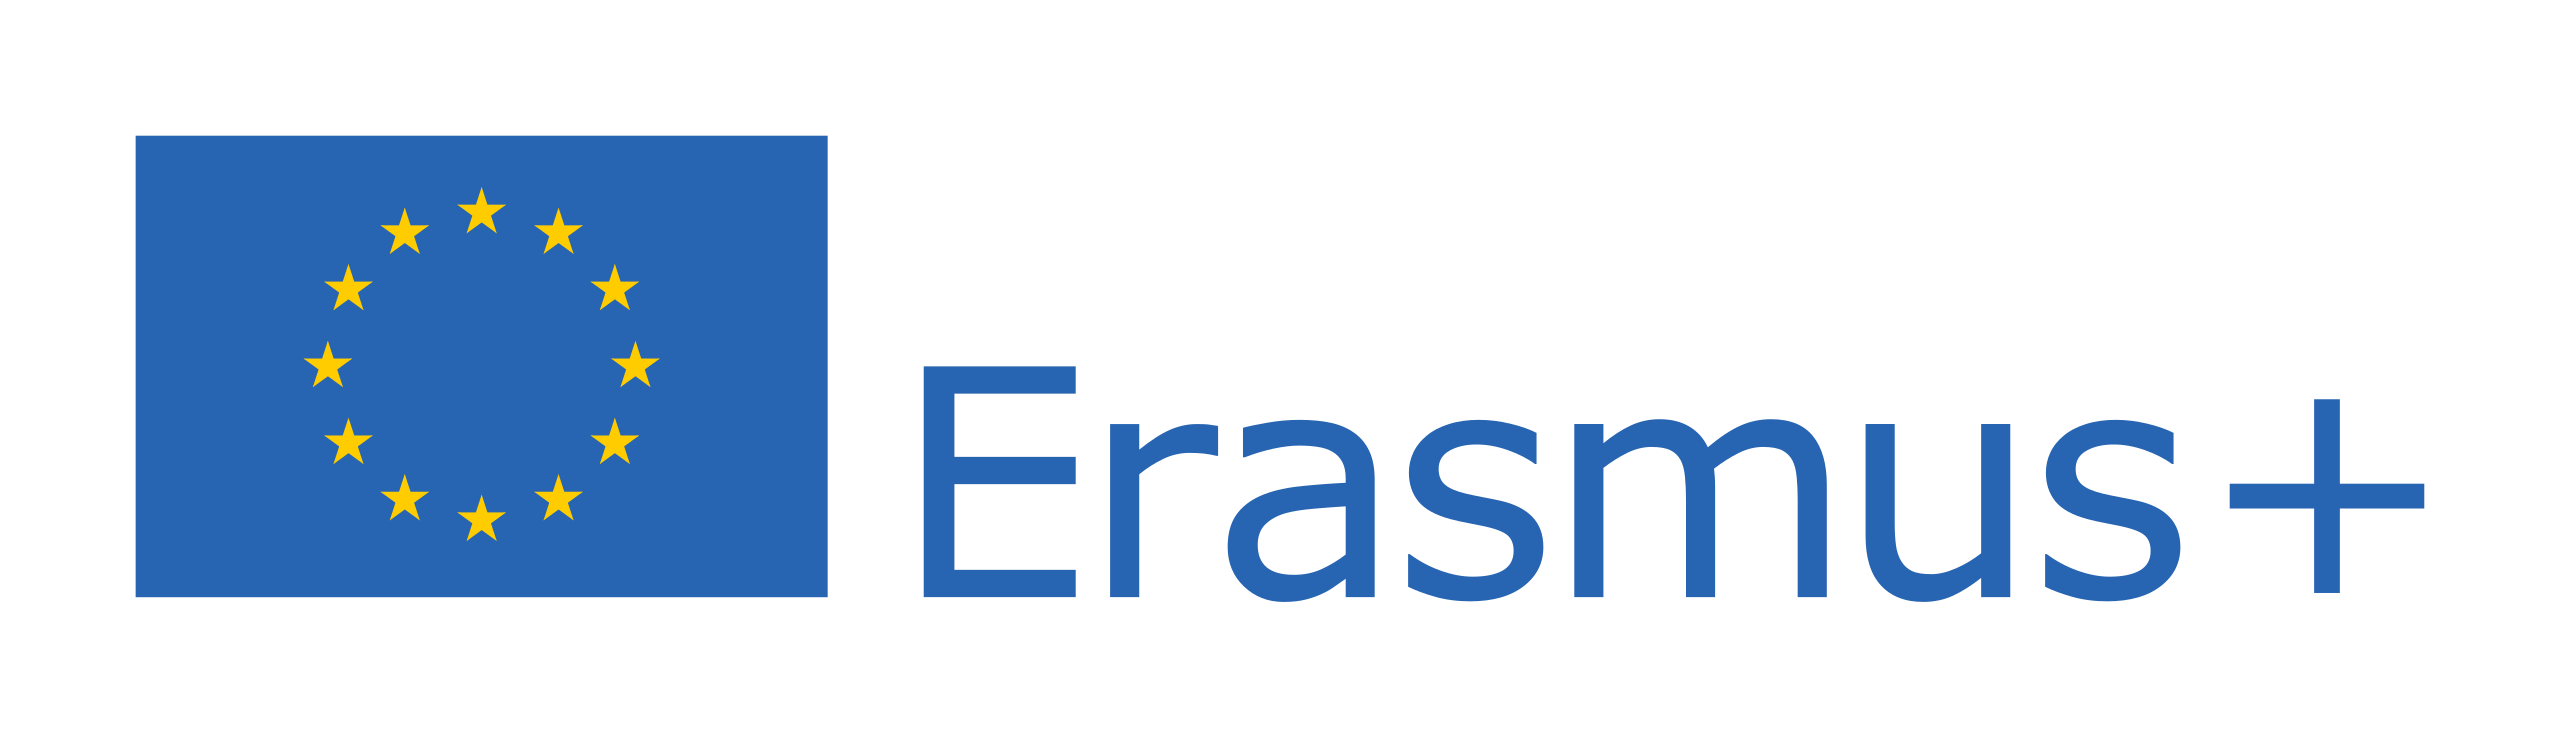 2560px-Erasmus(1).png